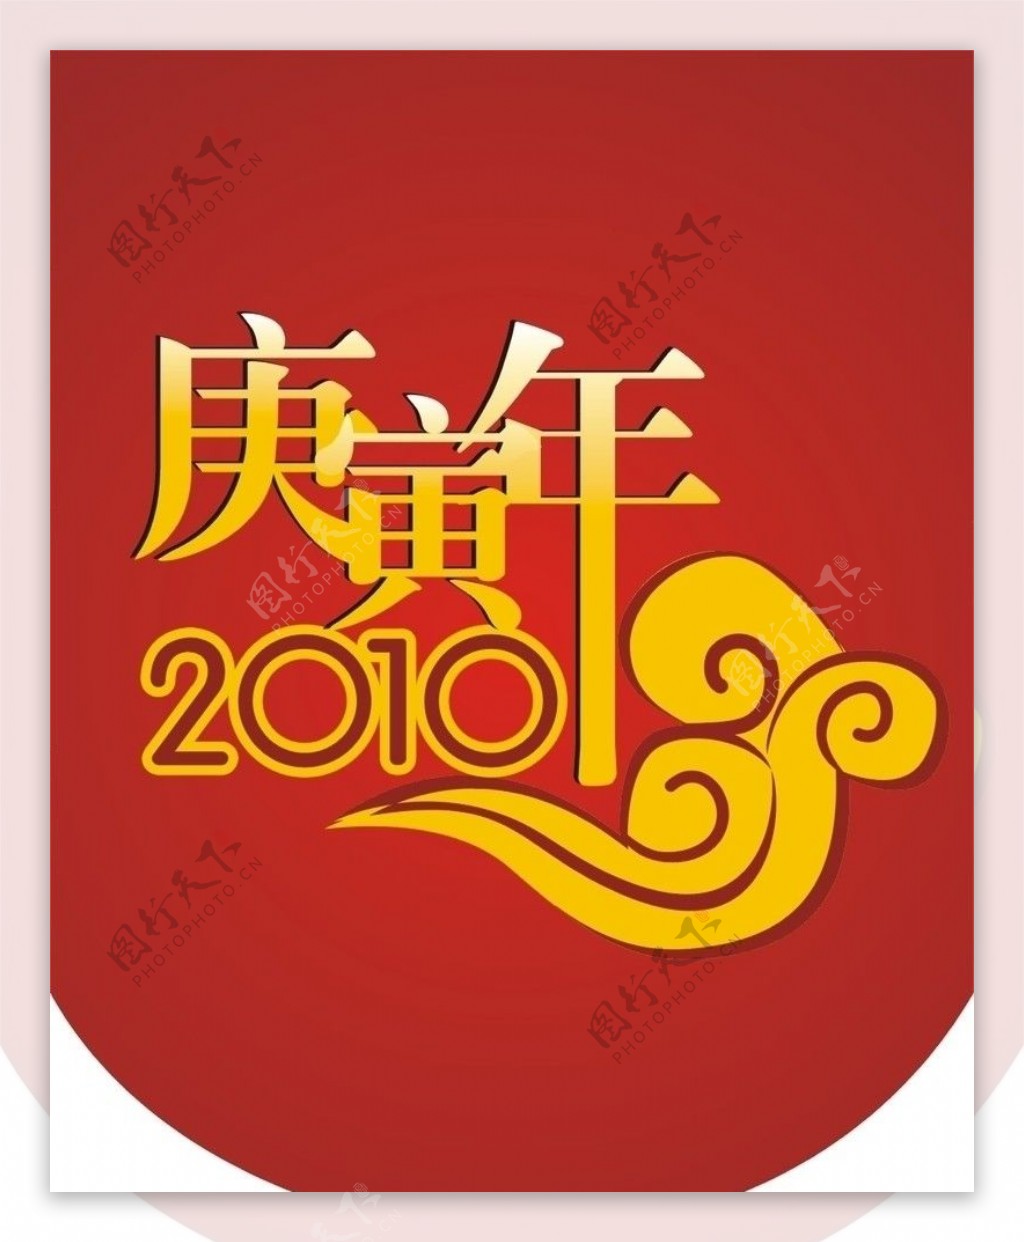 2010春节吊旗图片